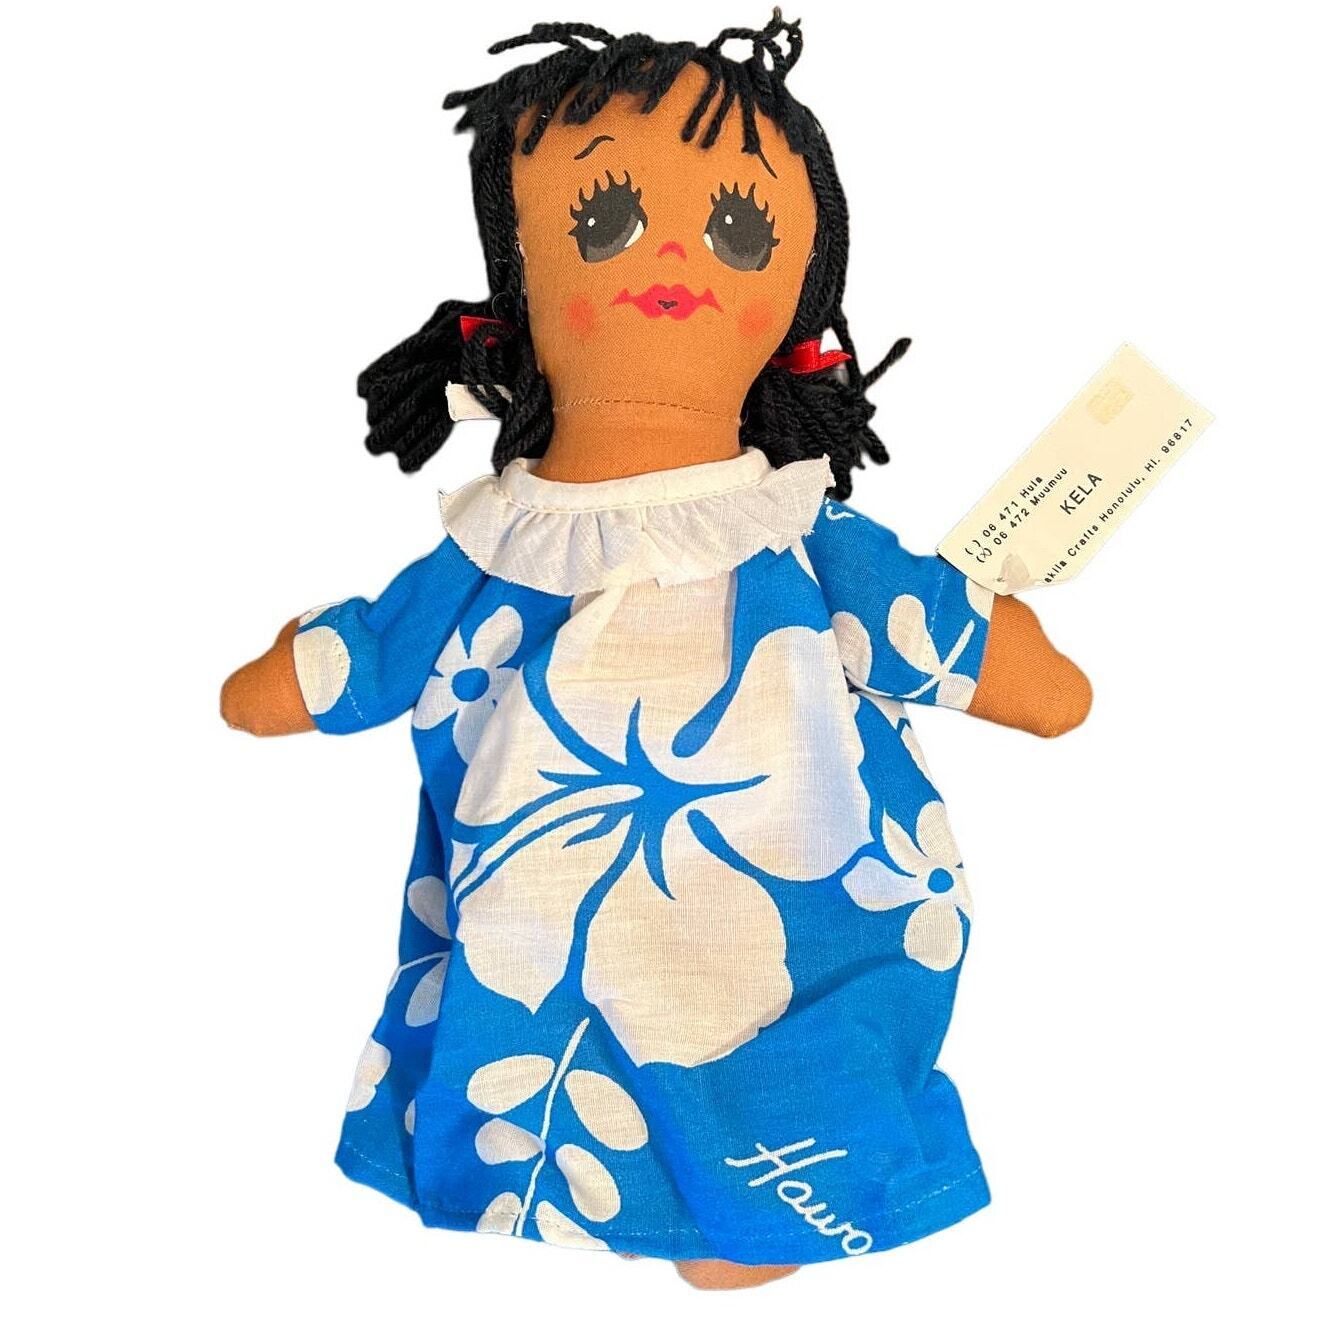 NWT Handmade Lanakila Hawaiian Doll from Honolulu - Kela Muumuu